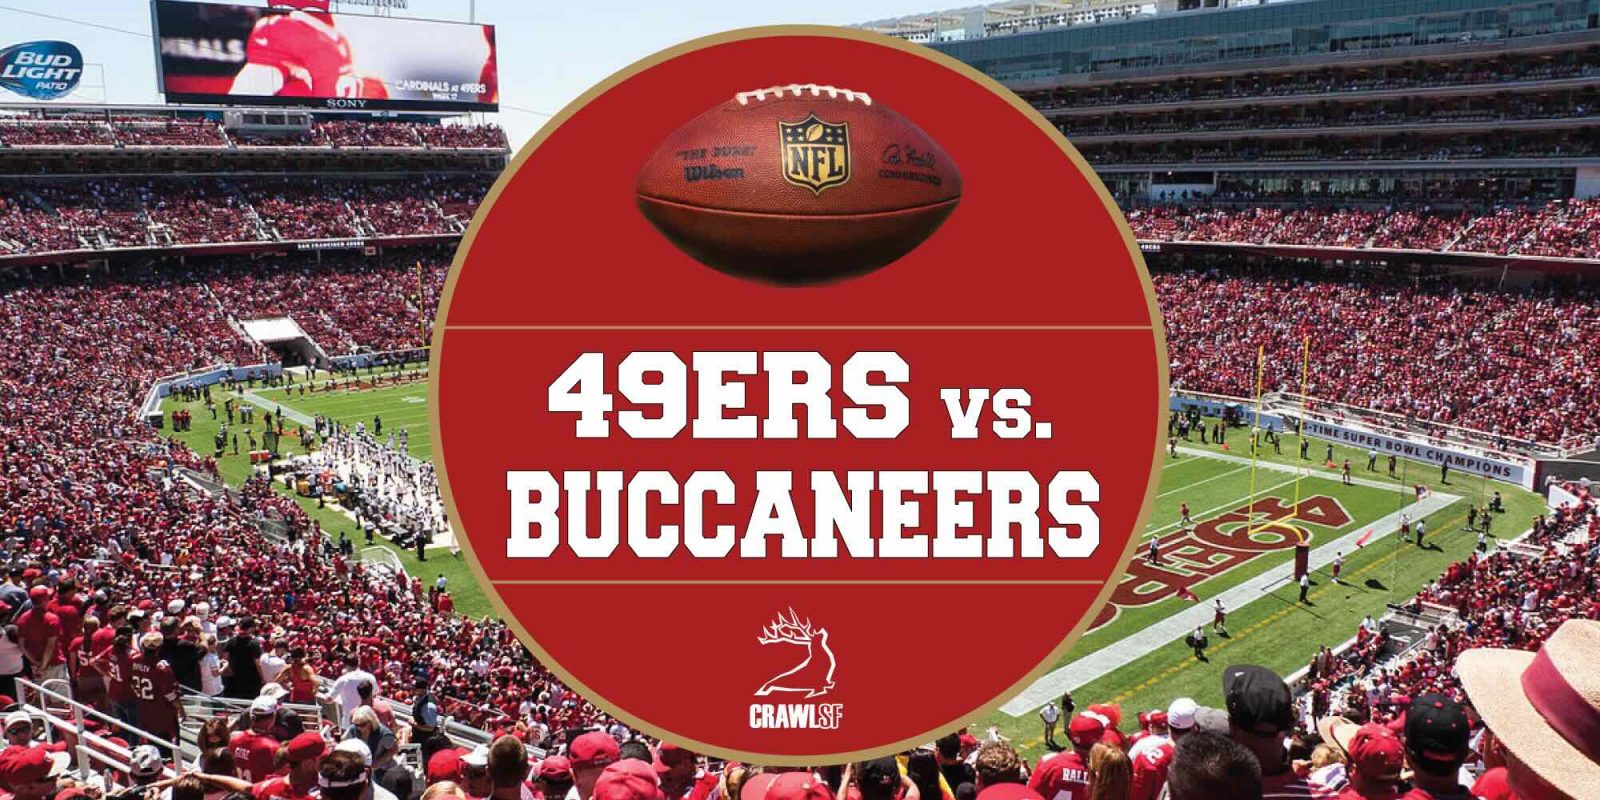 49ers vs. Buccaneers at Levi's Stadium